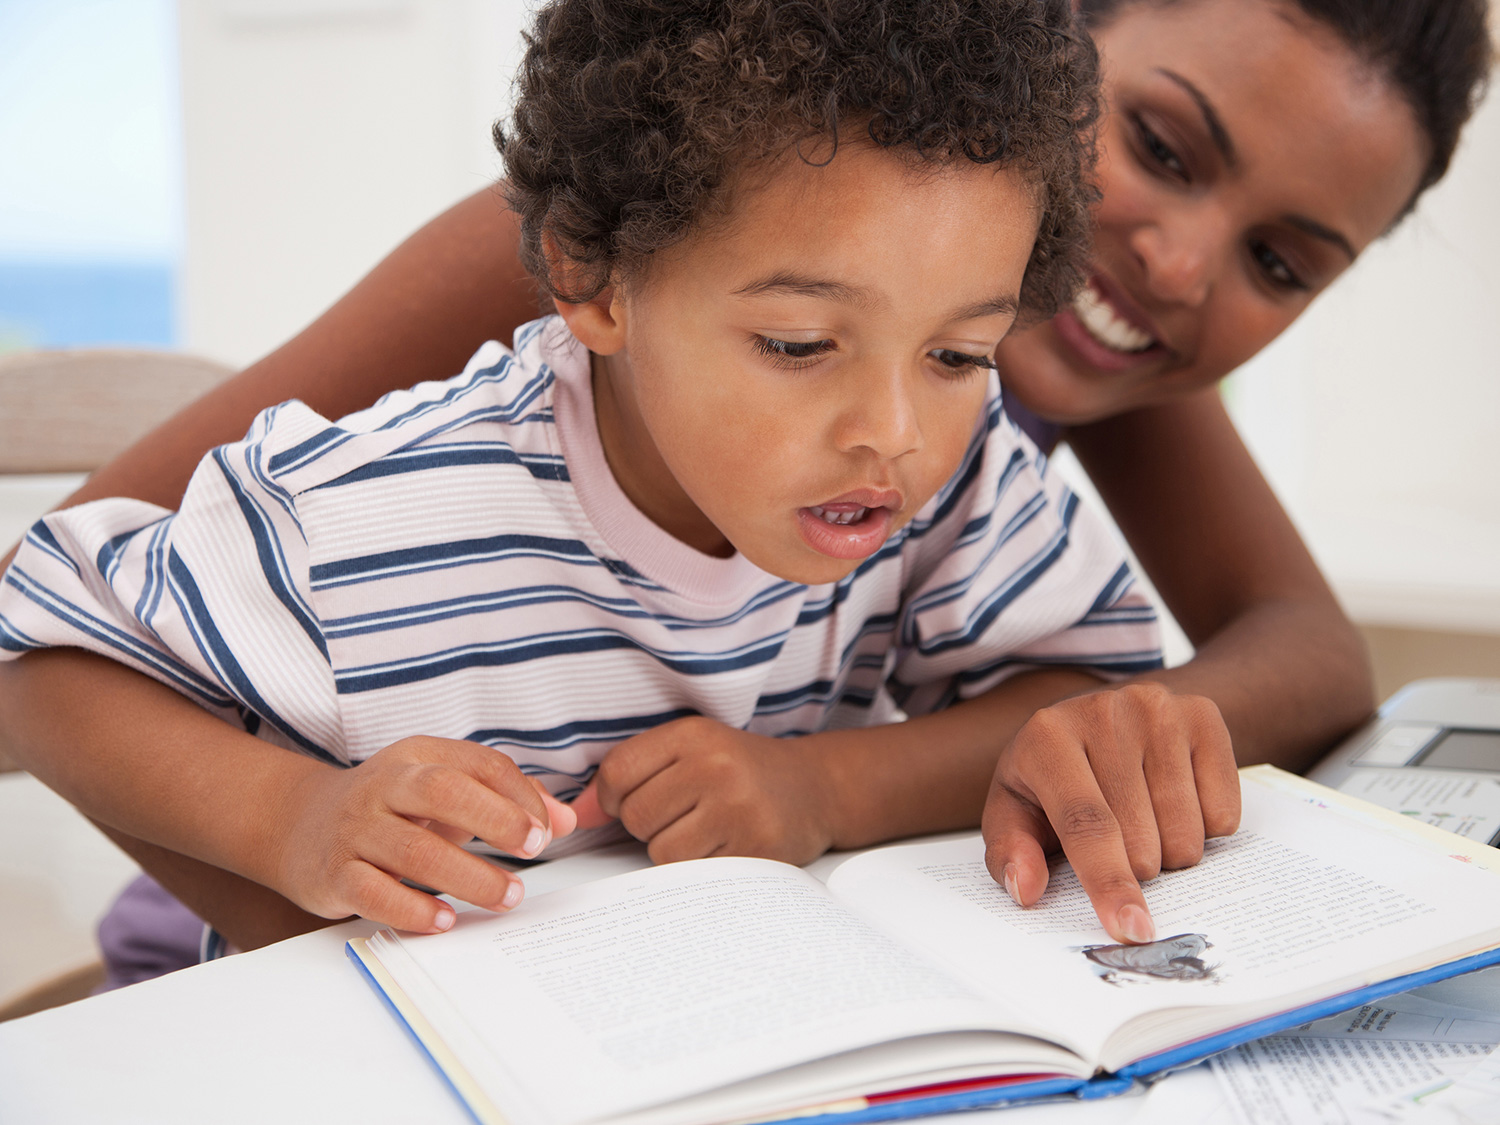 روشهای علاقمند نمودن کودکان به مطالعه و خواندن